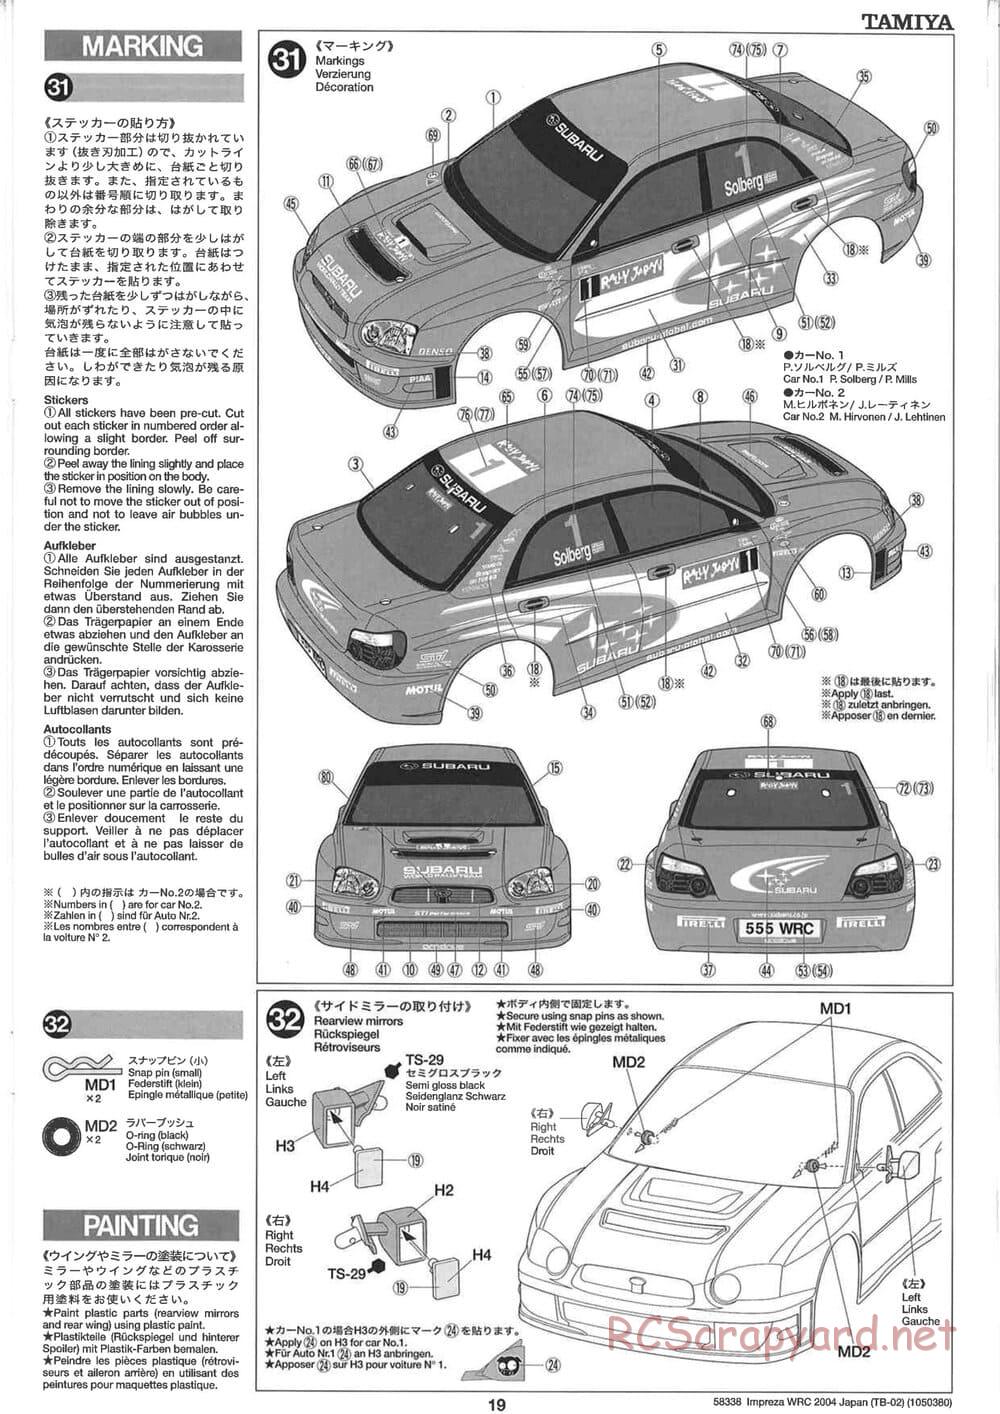 Tamiya - Subaru Impreza WRC 2004 Rally Japan - TB-02 Chassis - Manual - Page 19